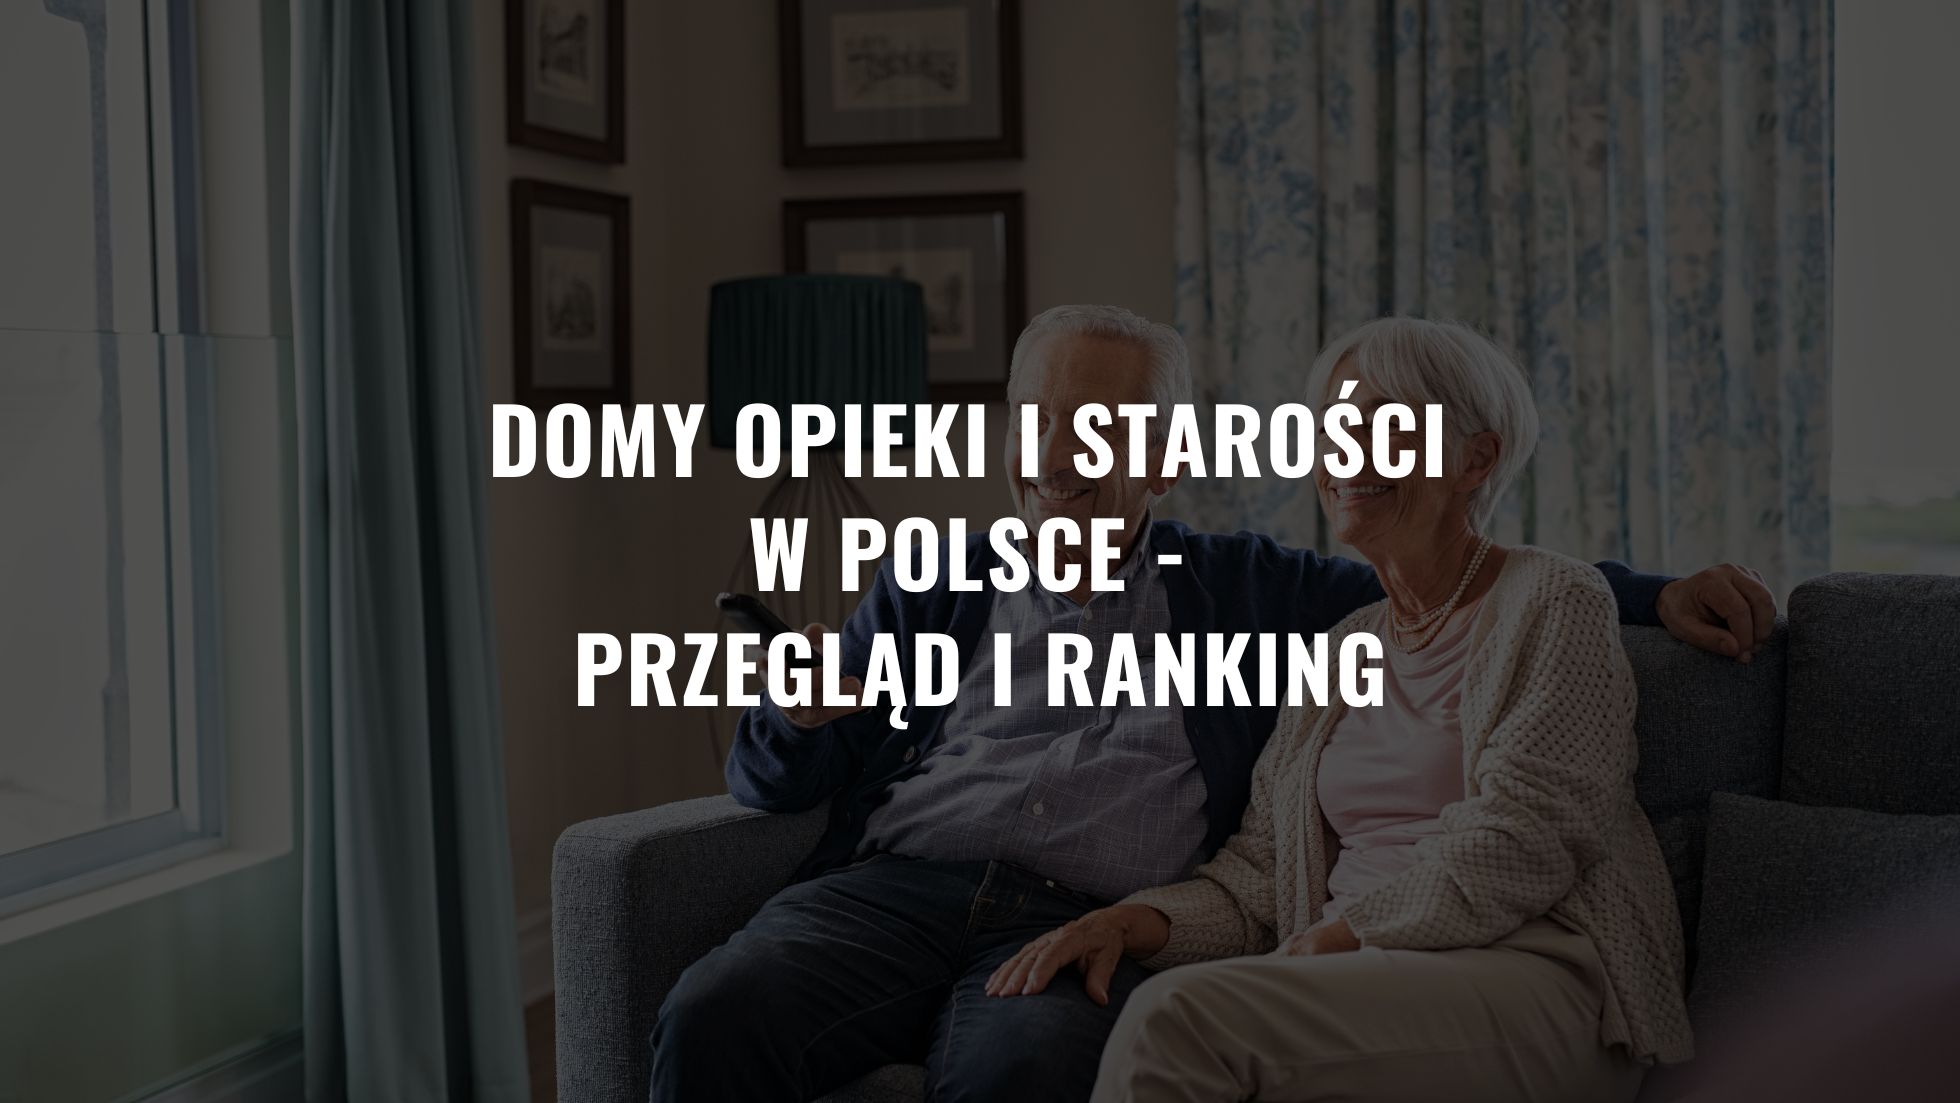 Domy opieki i starości w Polsce - przegląd i ranking